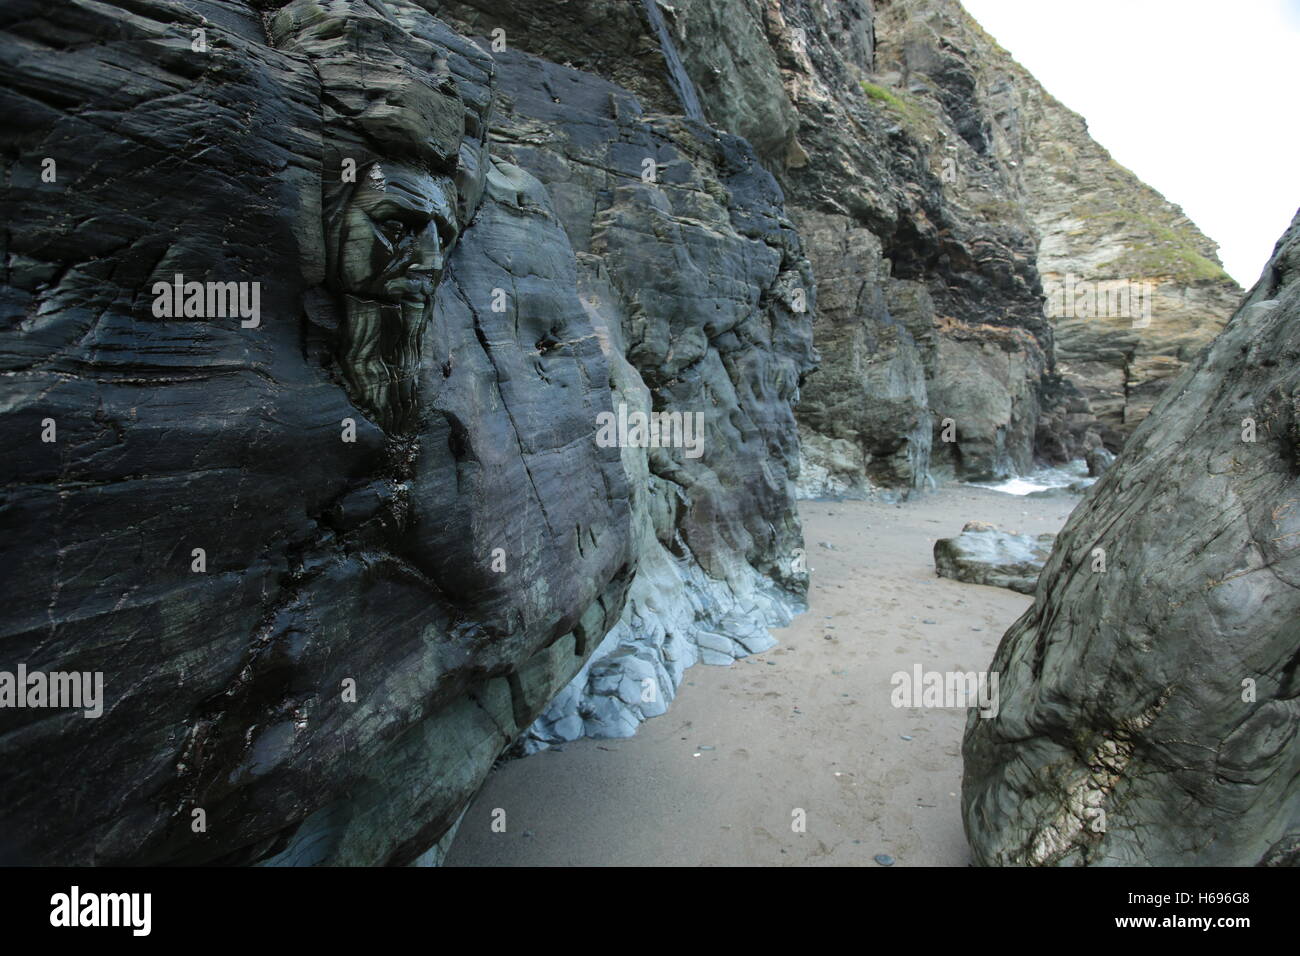 La plage de Tintagel en Cornouailles, avec des Merlins visage sculpté dans la roche. Banque D'Images